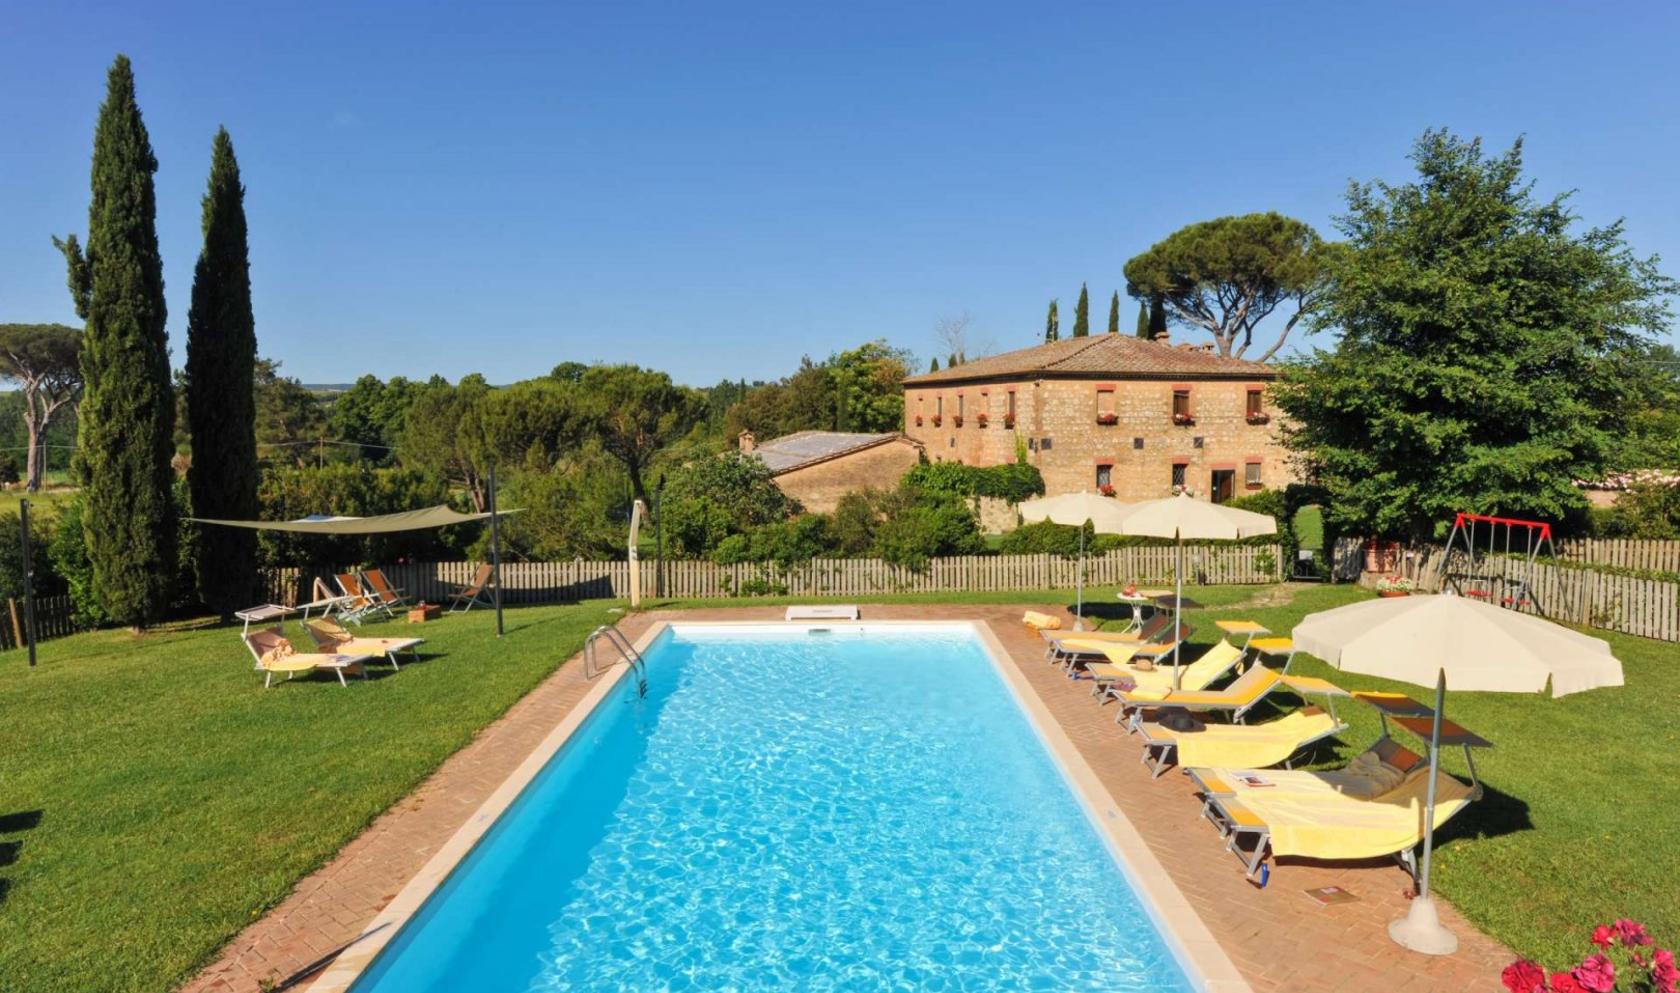 Toscana Immobiliare - Real estate in Siena, Monteroni d\'Arbia